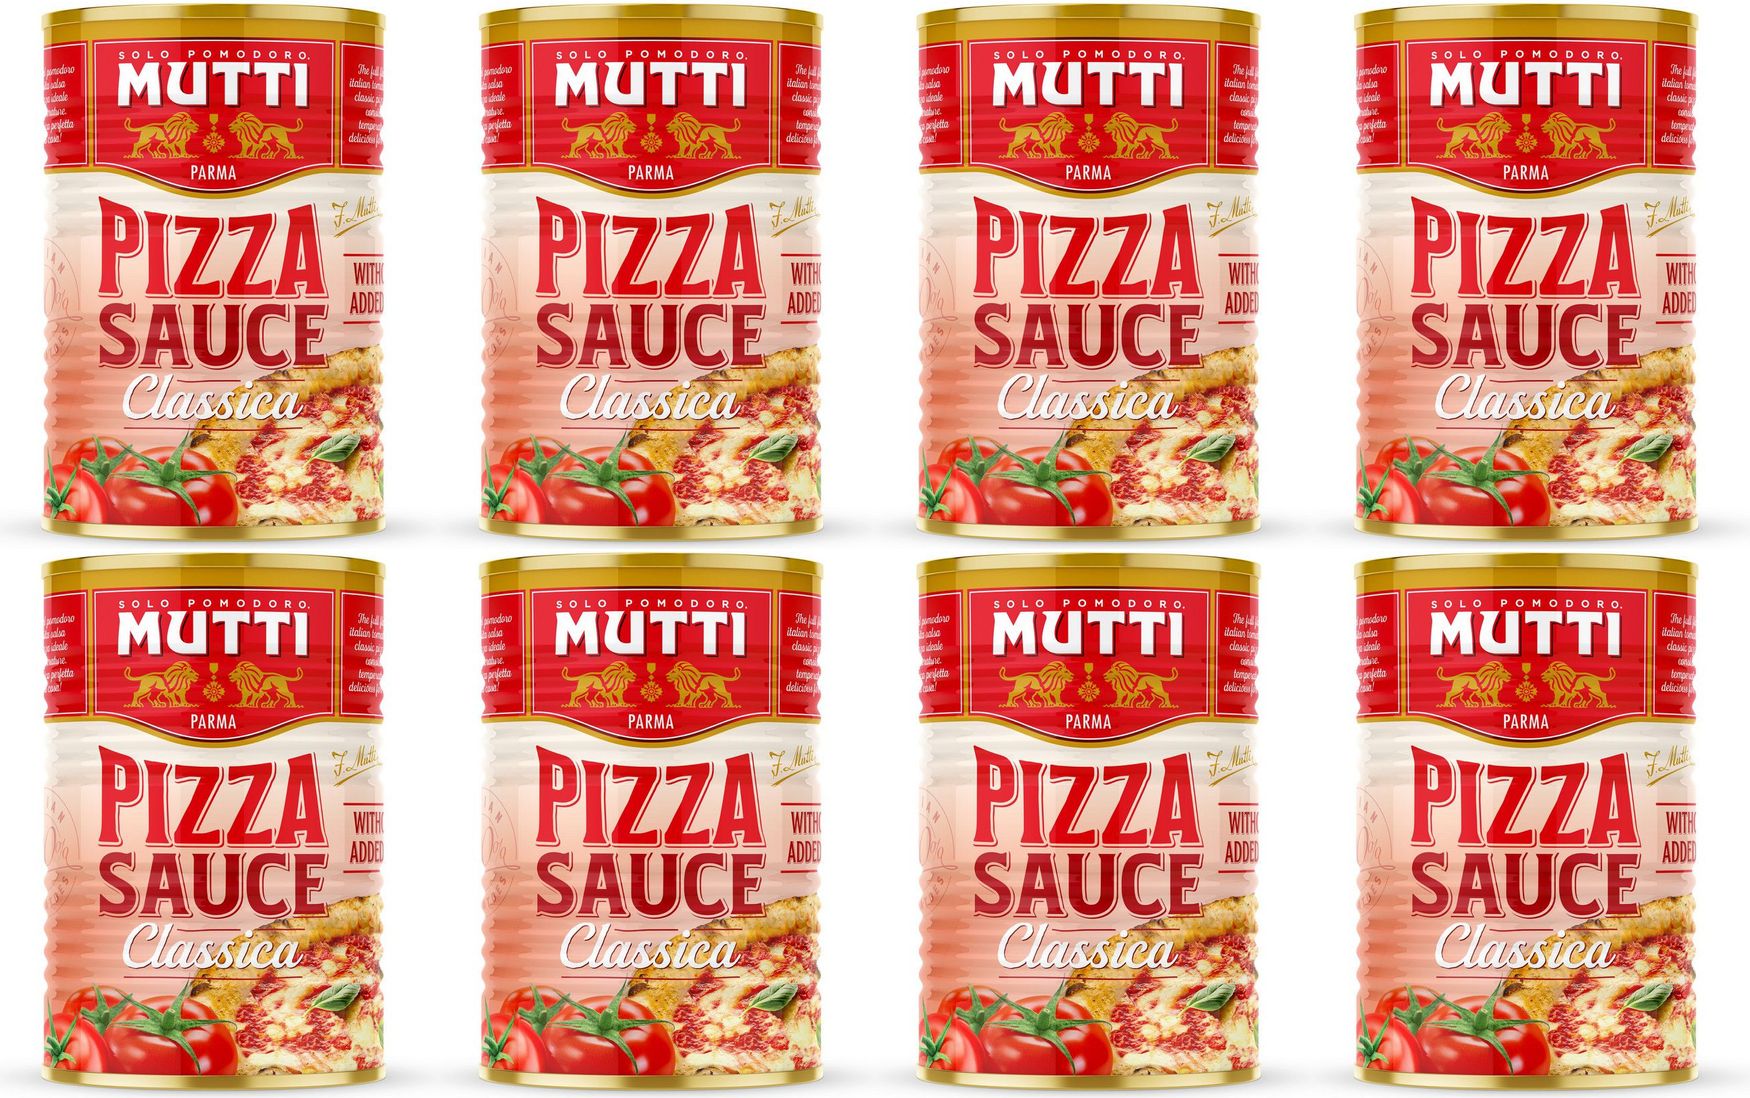 томатный соус для пиццы mutti состав фото 65